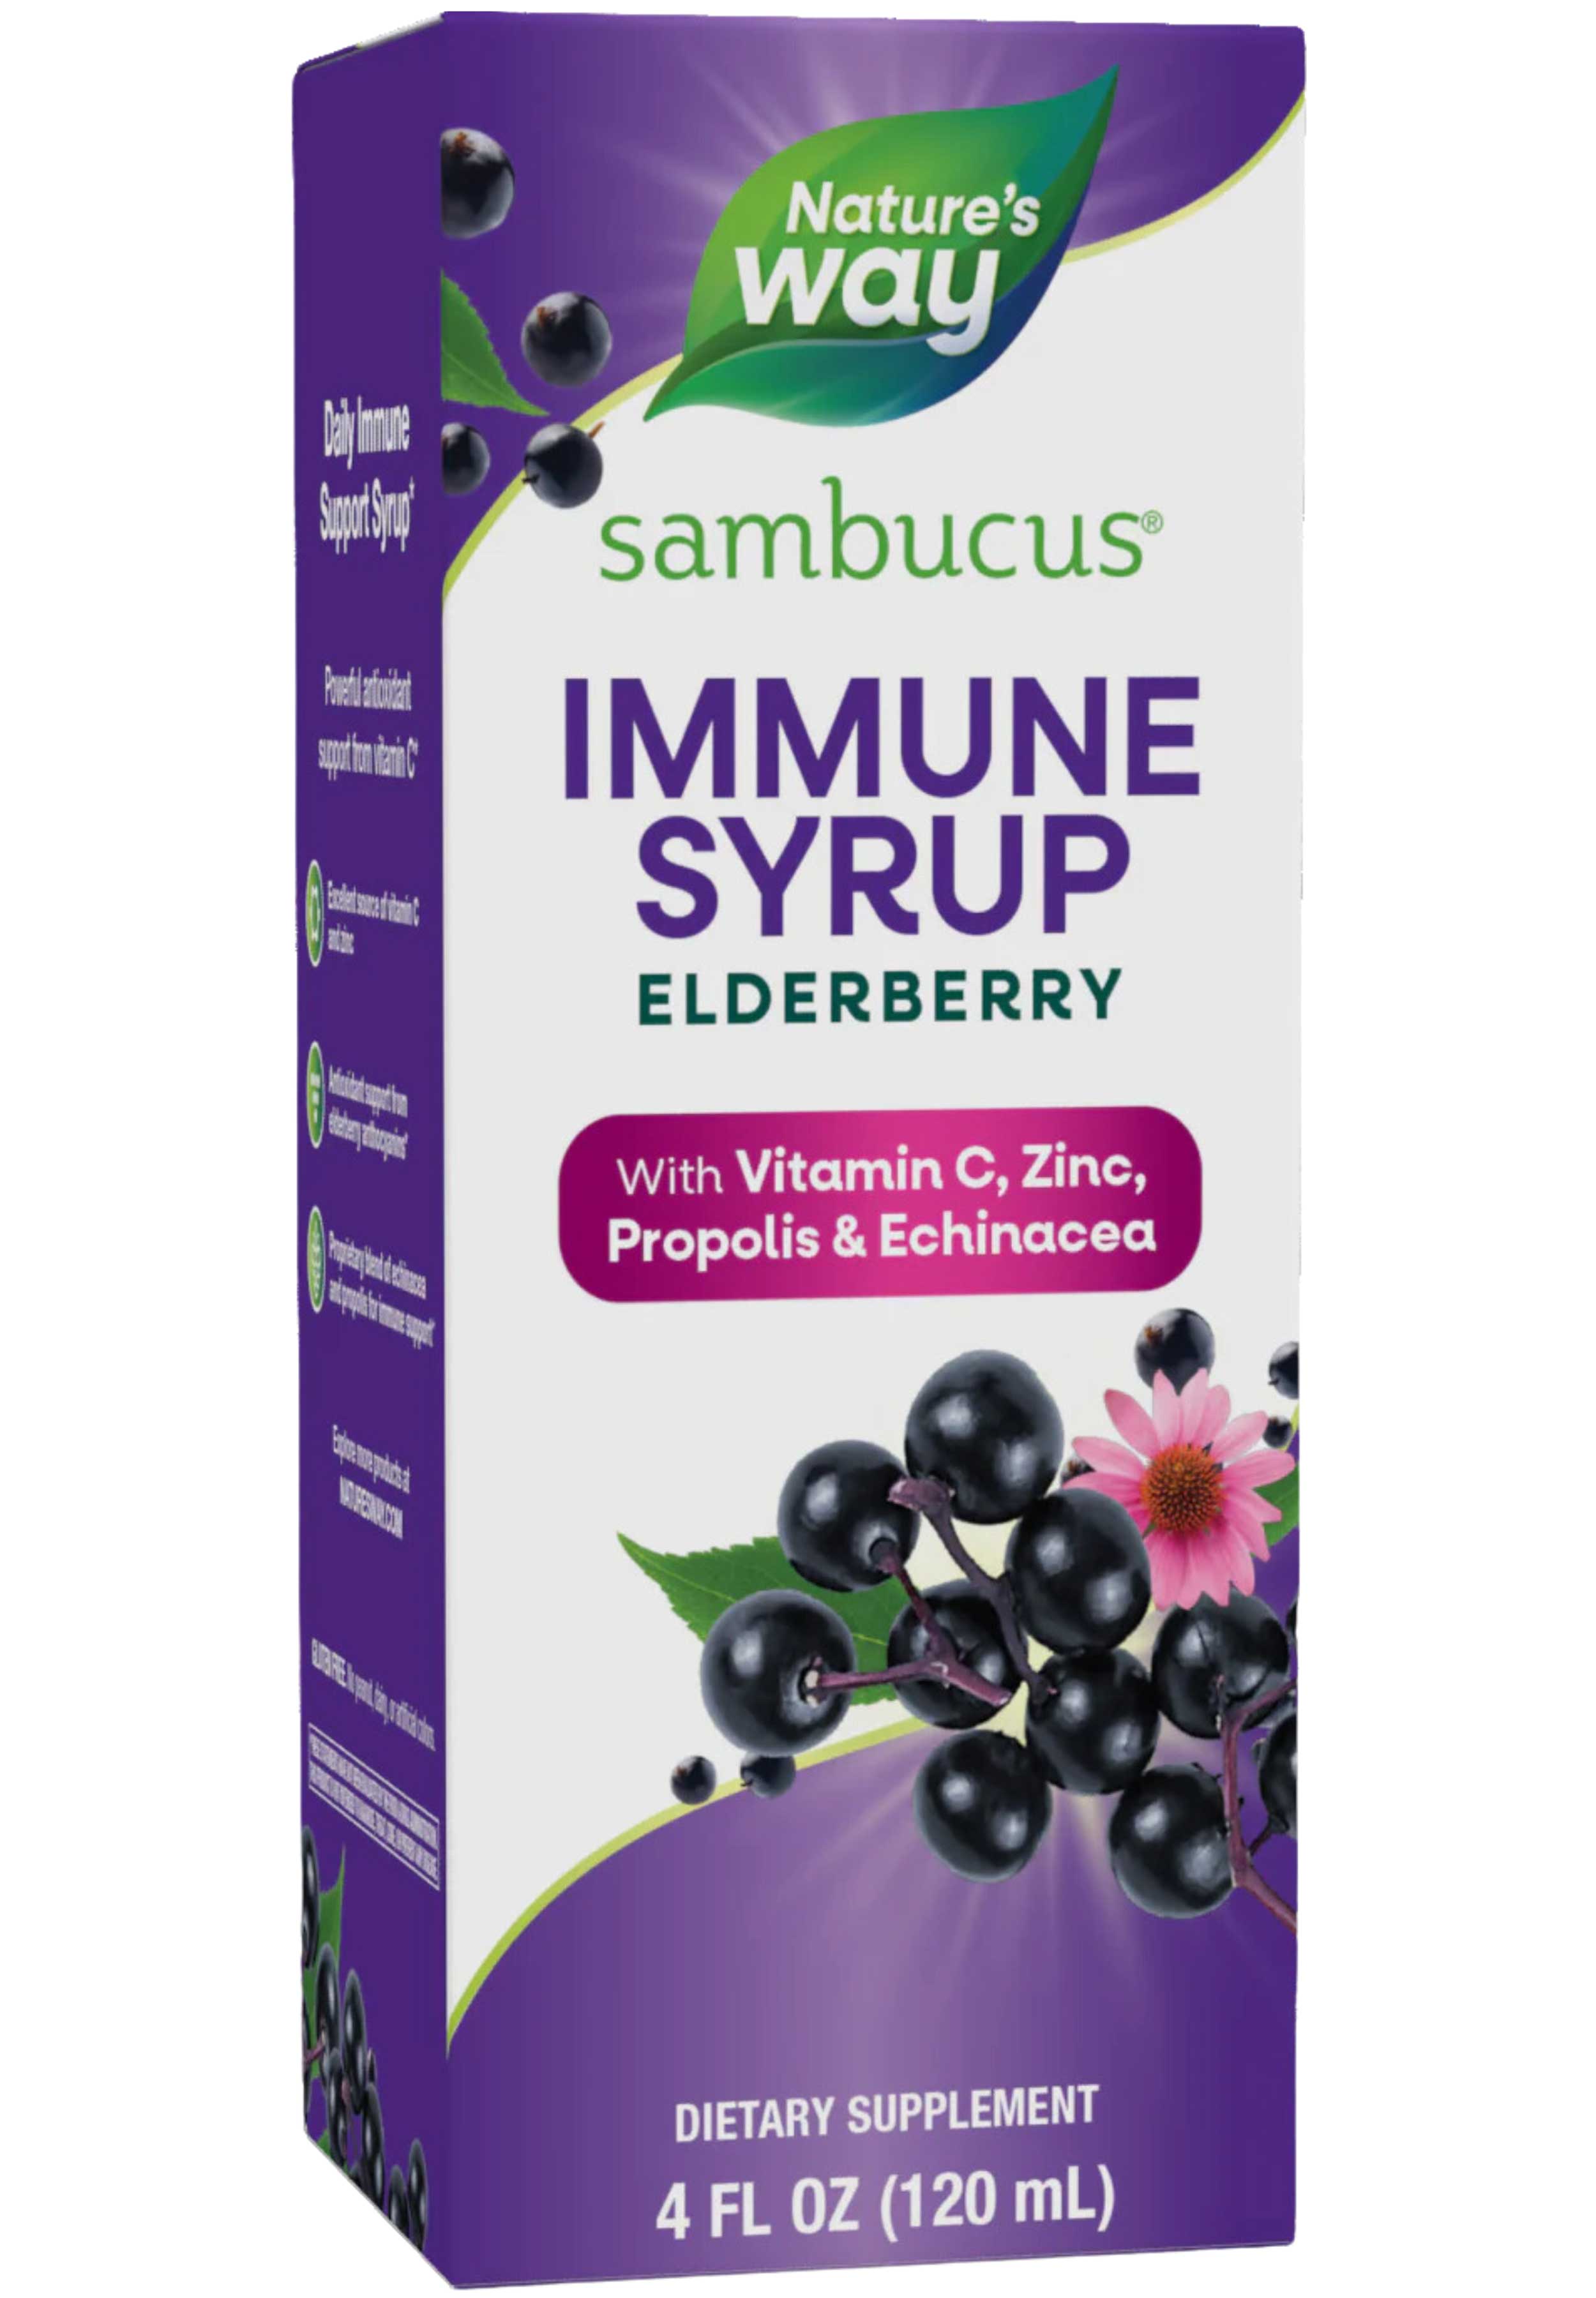 Nature's Way Sambucus Immune Syrup